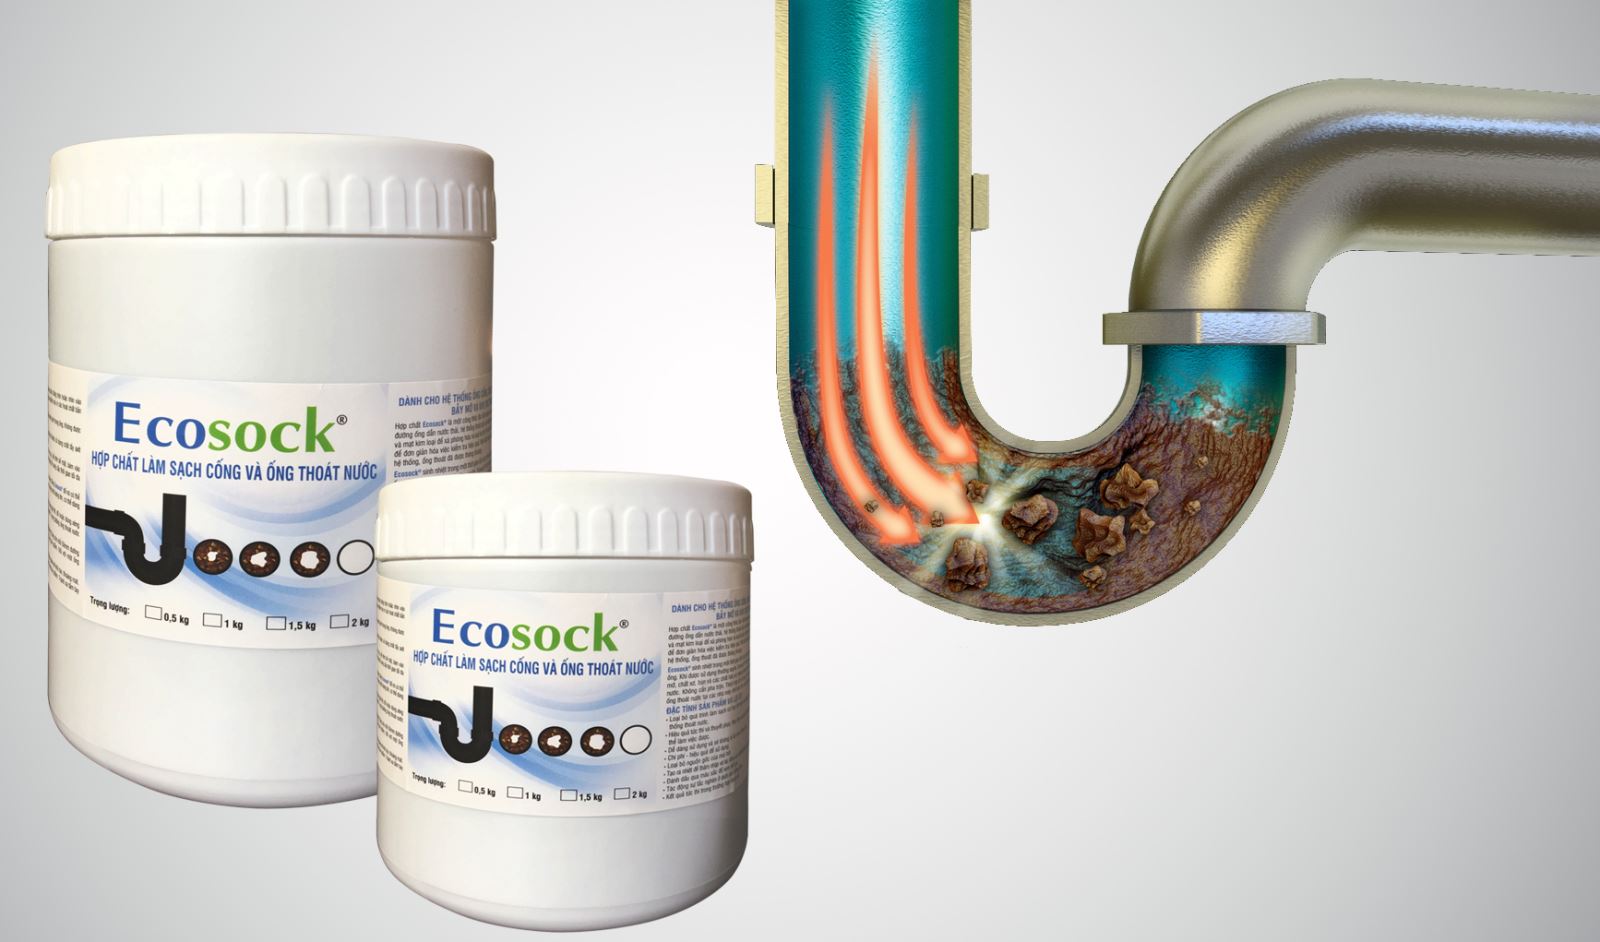 hợp chất làm sạch cống và ống thoát nước EcoSock